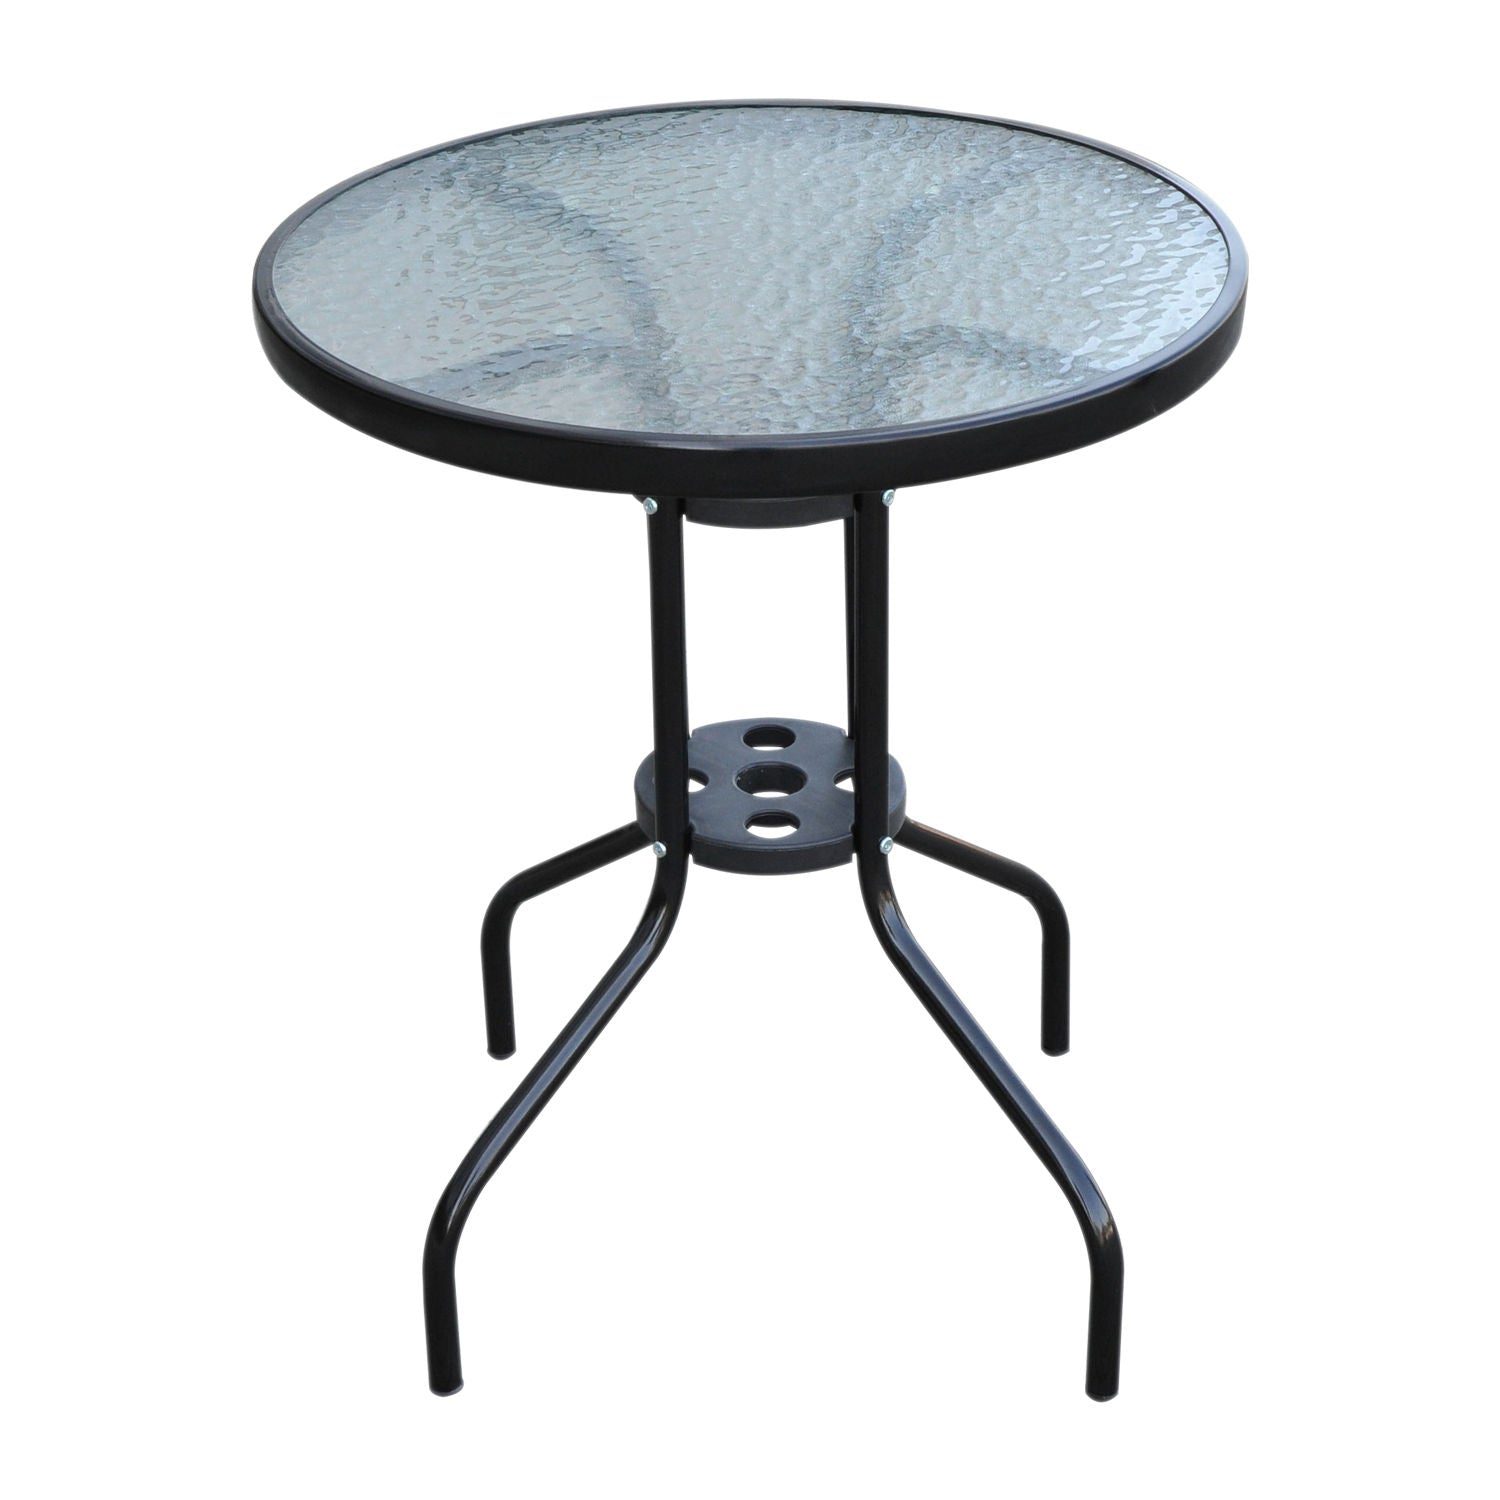 Table de jardin Nancy's Upland - Table en verre - Table de bistro - Table de balcon - Noir - Métal - Verre de sécurité - 60 x 70 cm